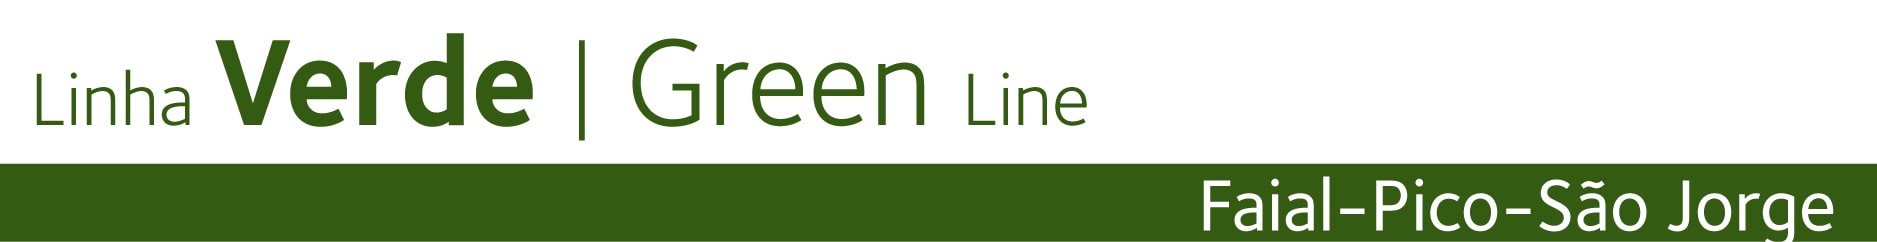 Linha Verde - Green Line